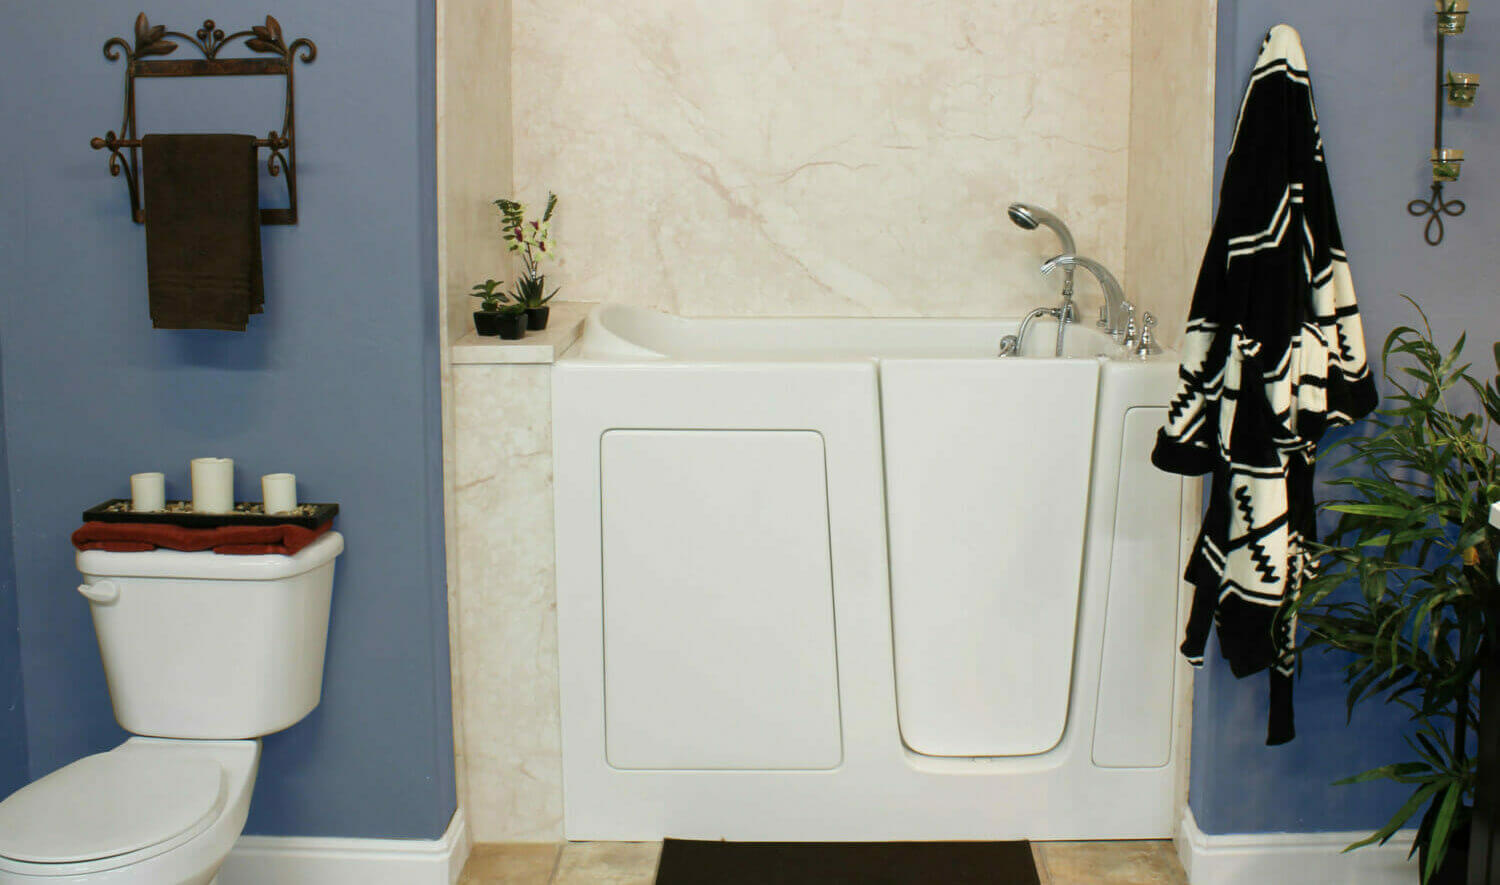 Five Star Bath Solutions of Orem Walk-in Bathtub Installation